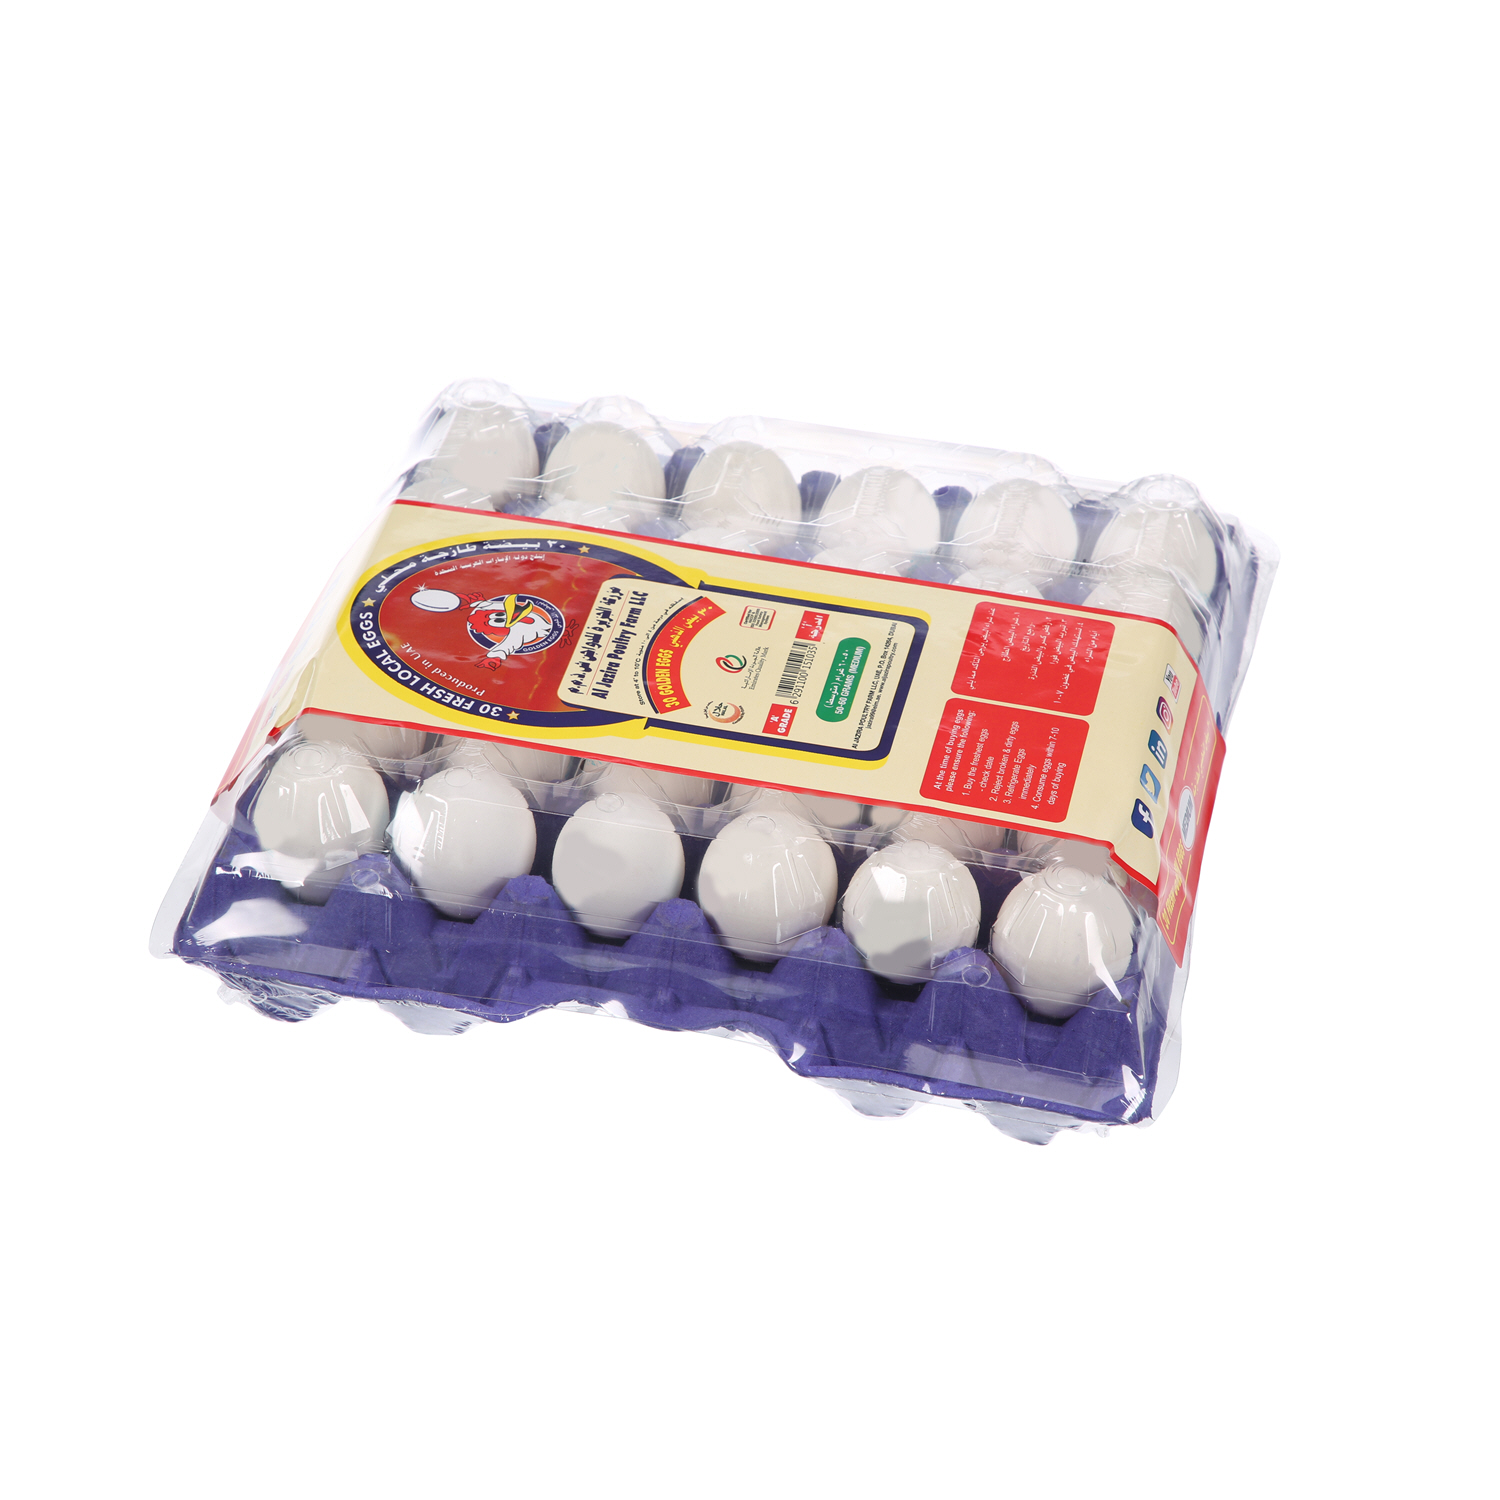 Al Jazira White Eggs Medium 30 Pack